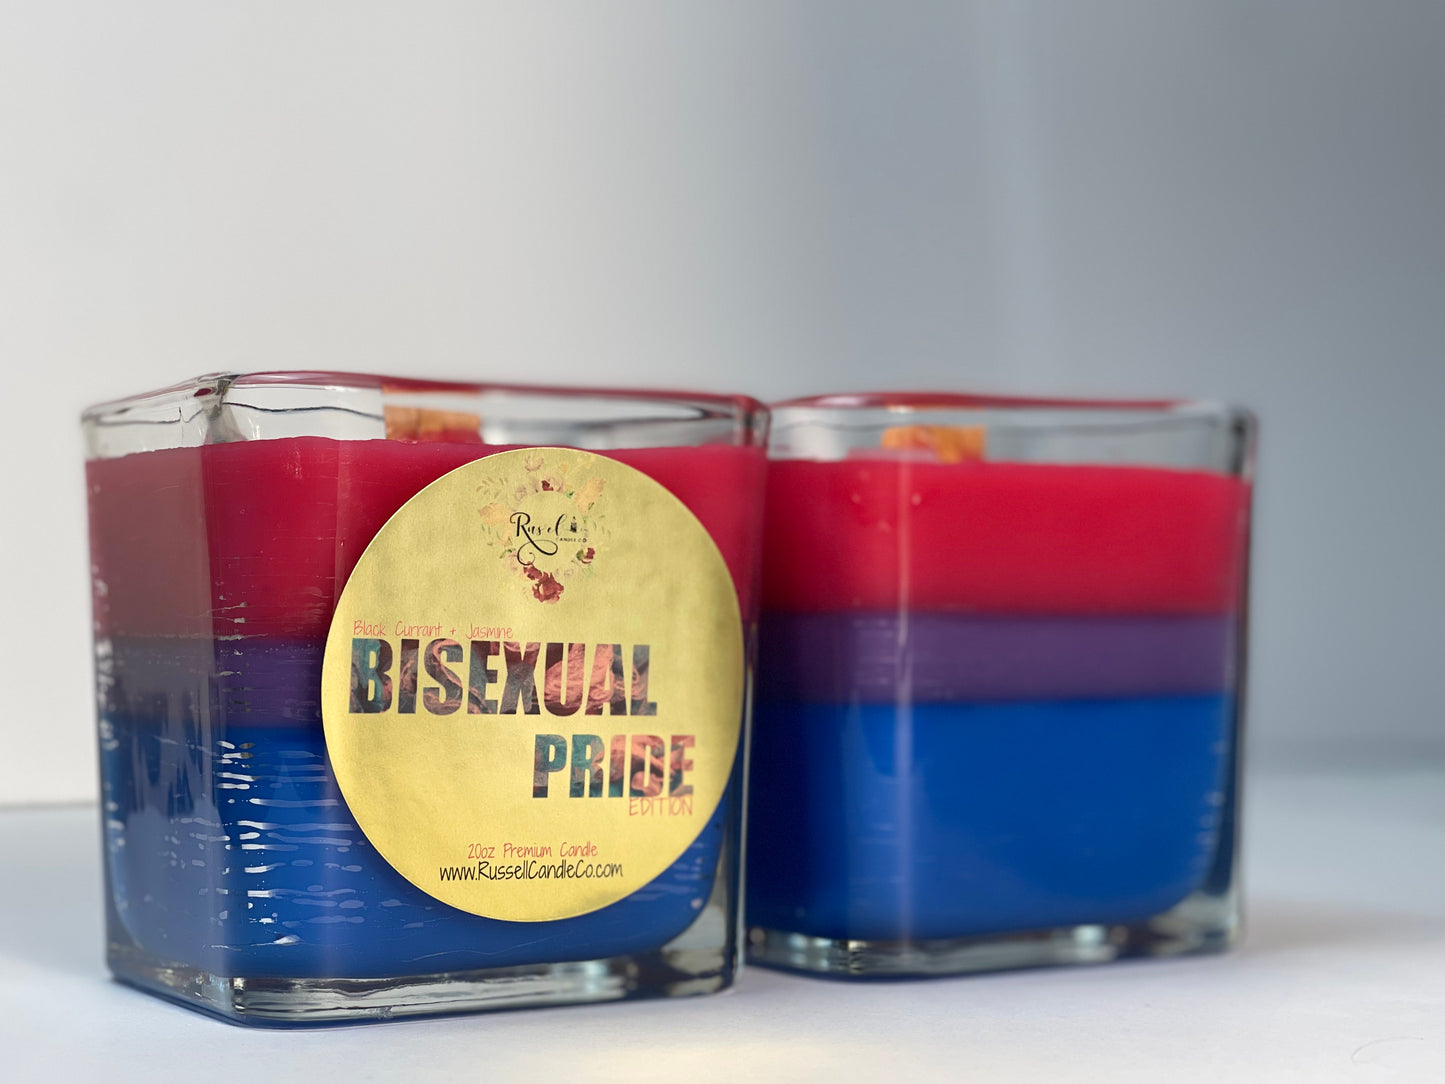 Bisexual Pride Premium Candle